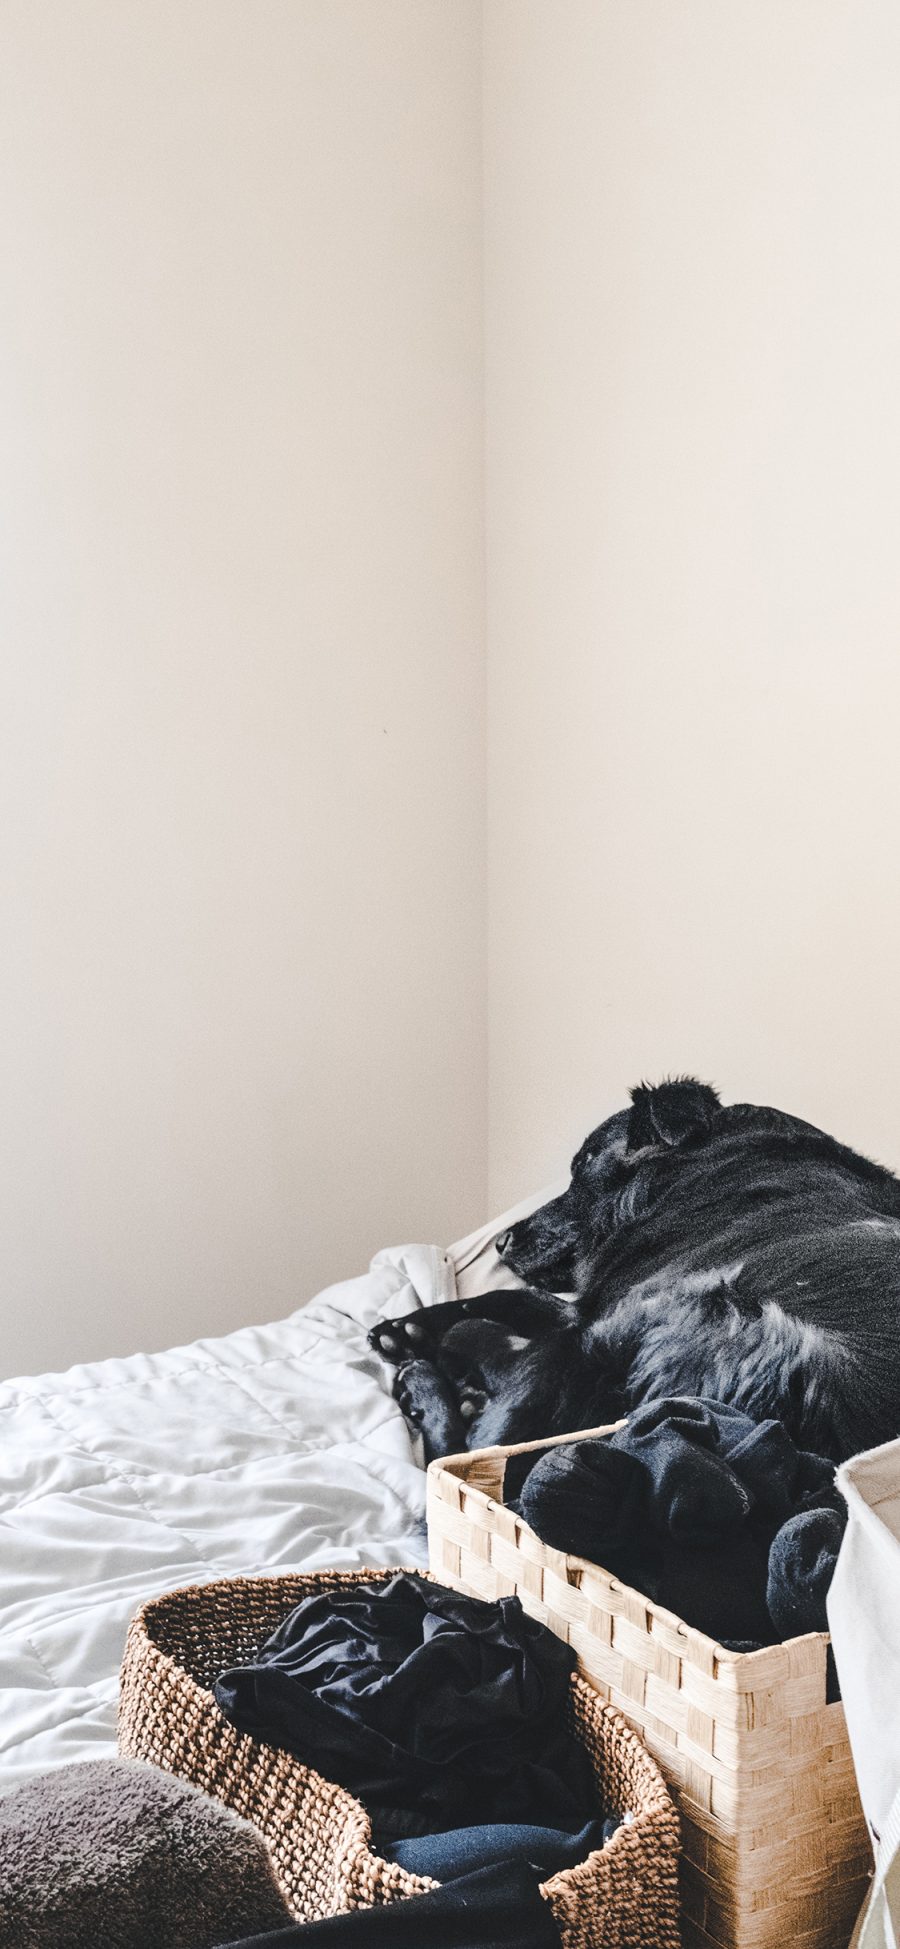 [2436×1125]宠物 黑狗 家居 简洁 苹果手机壁纸图片